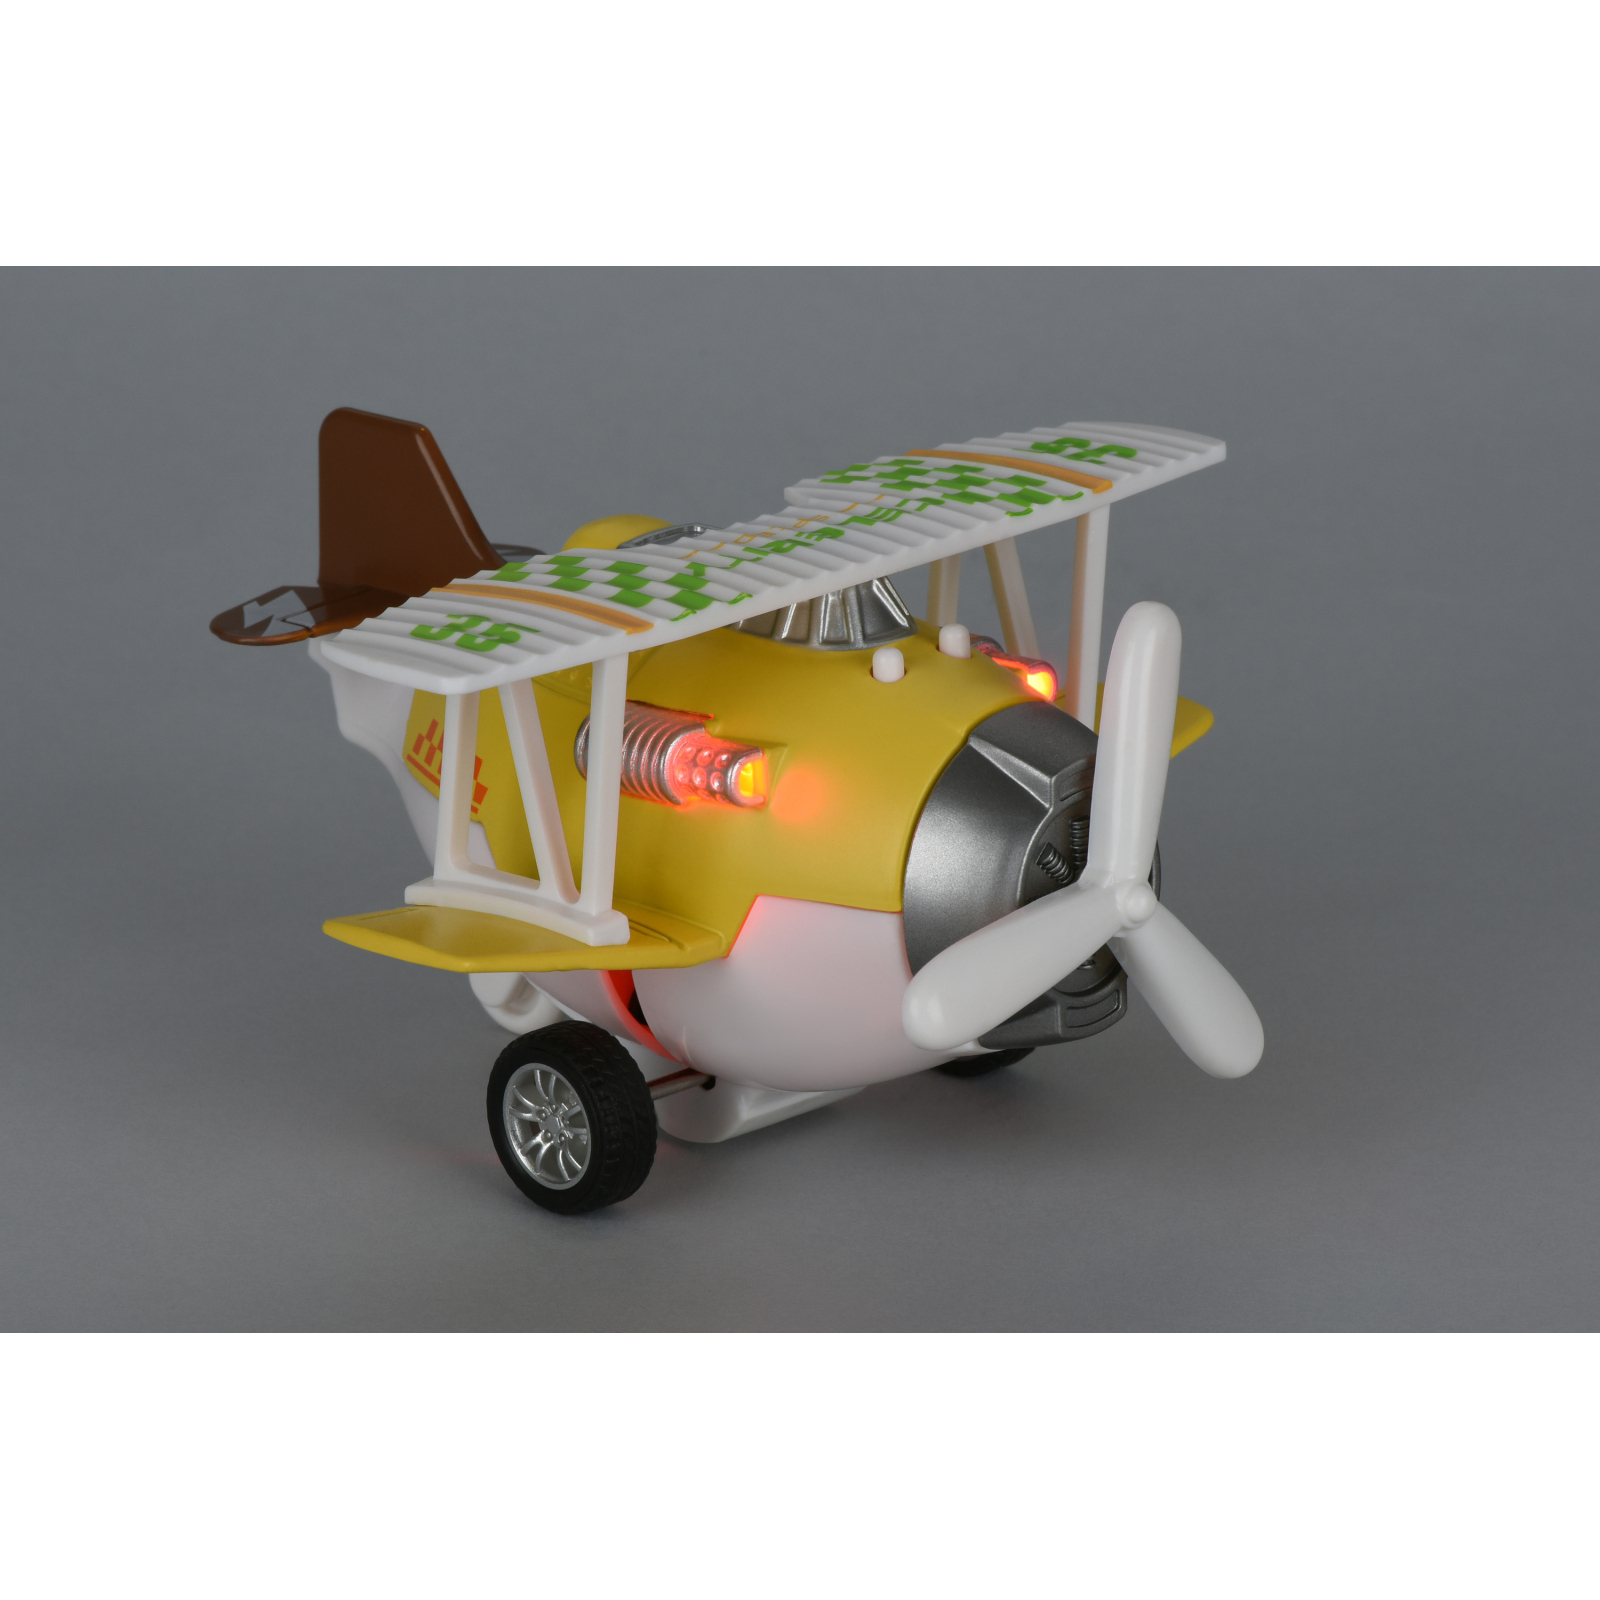 Спецтехника Same Toy Самолет металический инерционный Aircraft оранжевый со свето (SY8012Ut-1) изображение 2